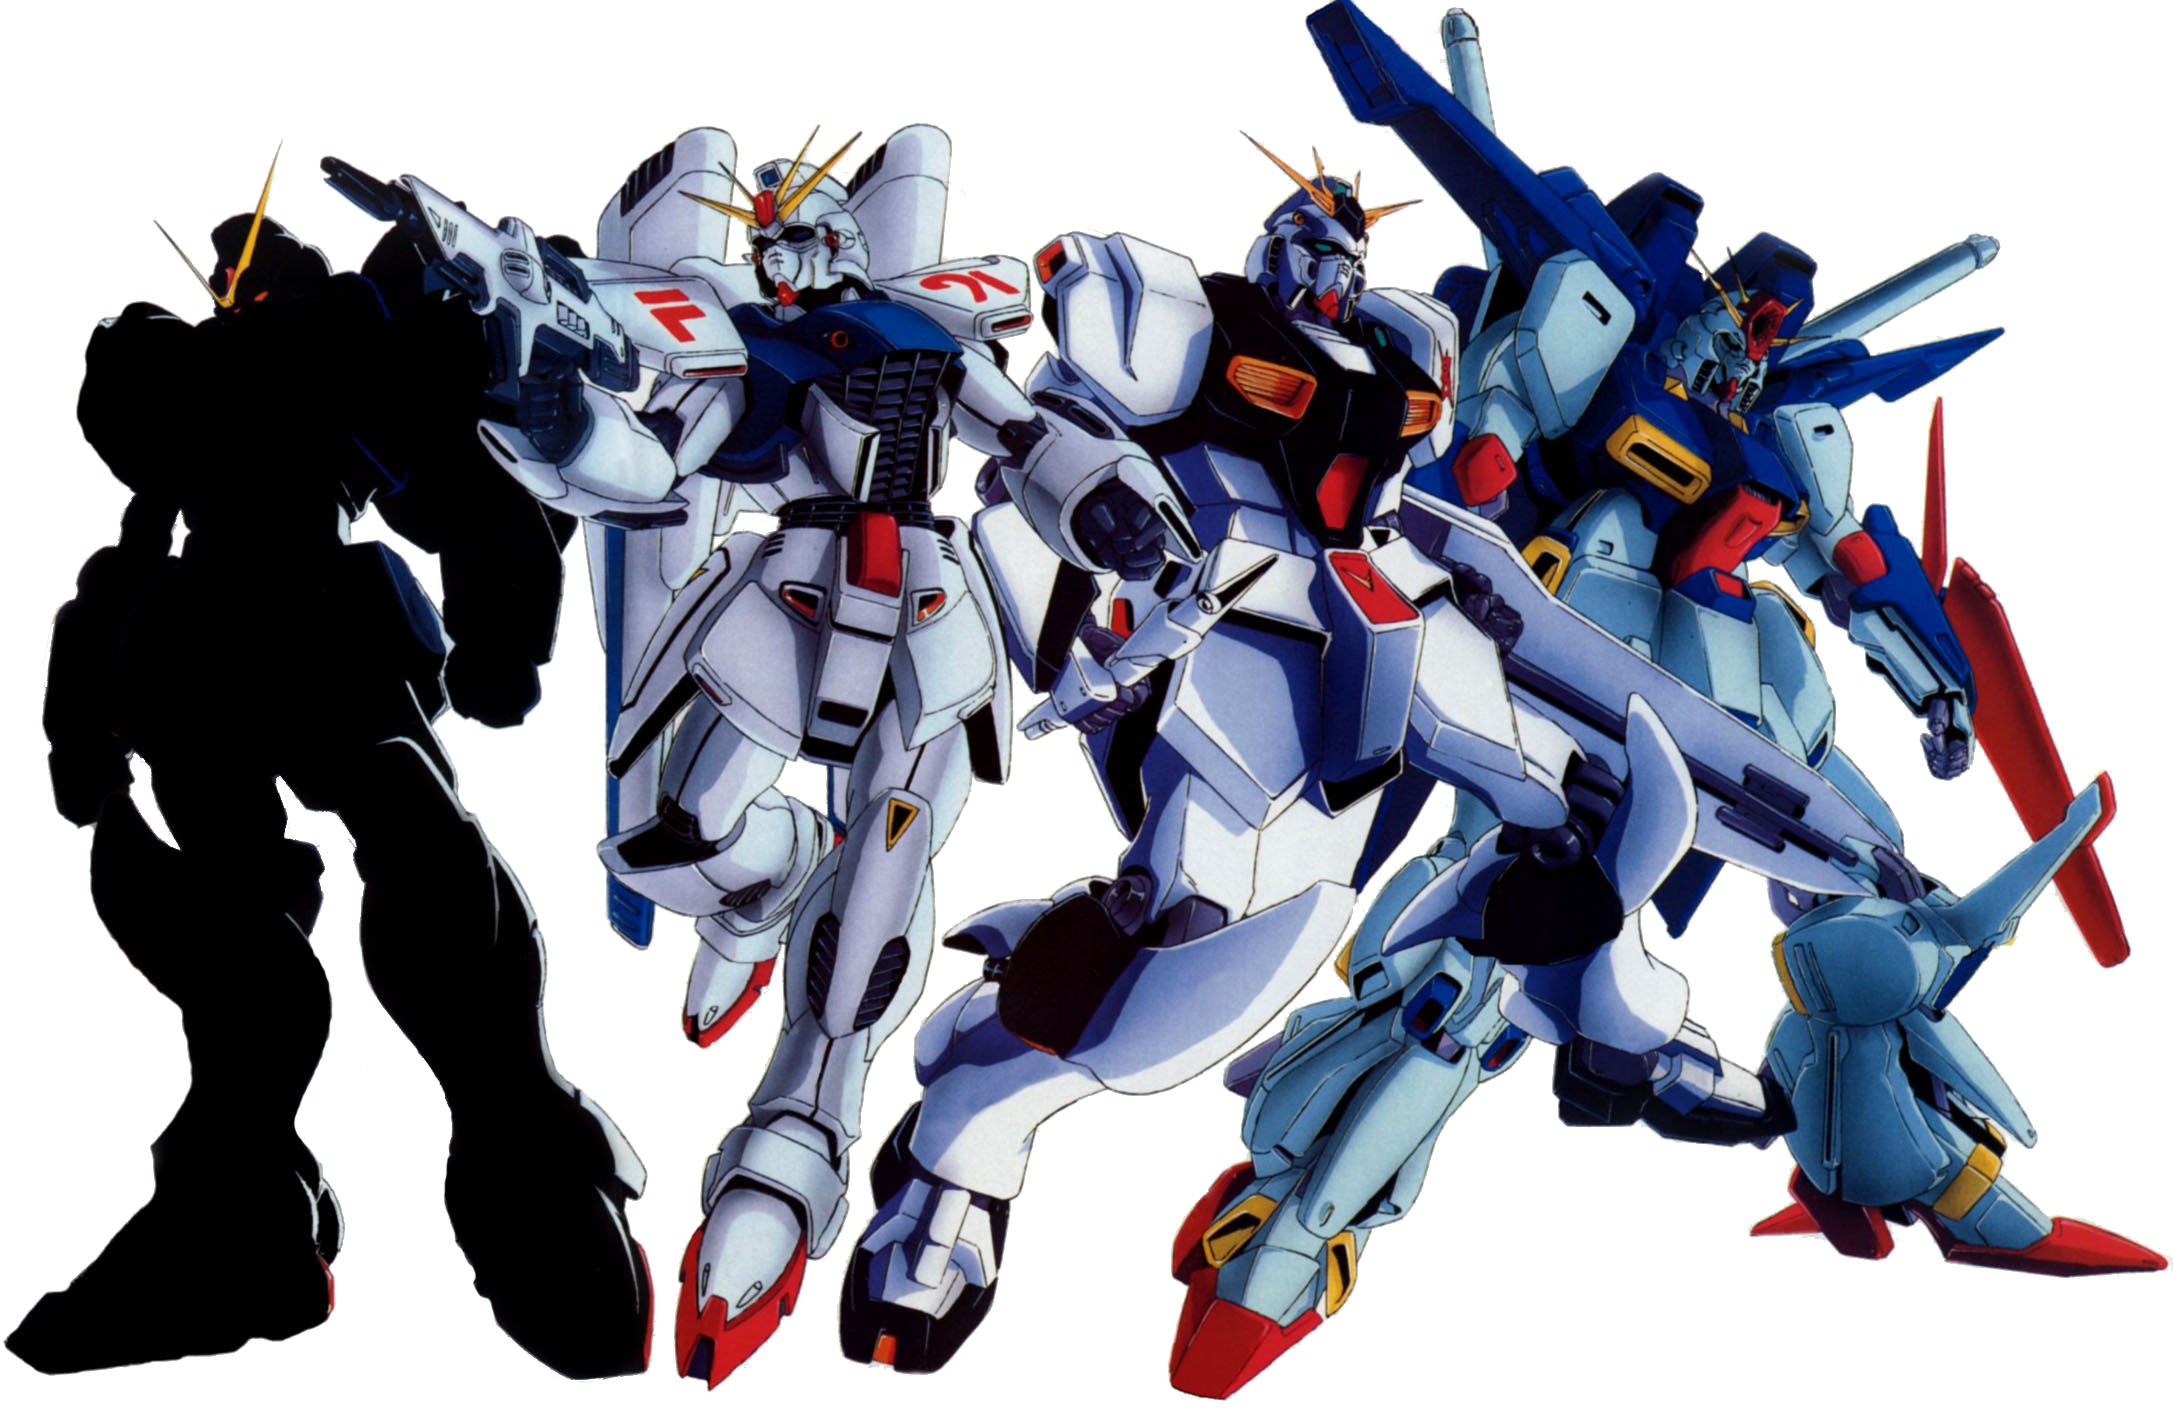 Anime Mobile Suit Gundam Mobile Suit Gundam ZZ Nu Gundam Mobile Suit Gundam Chars Counterattack 2173x1413